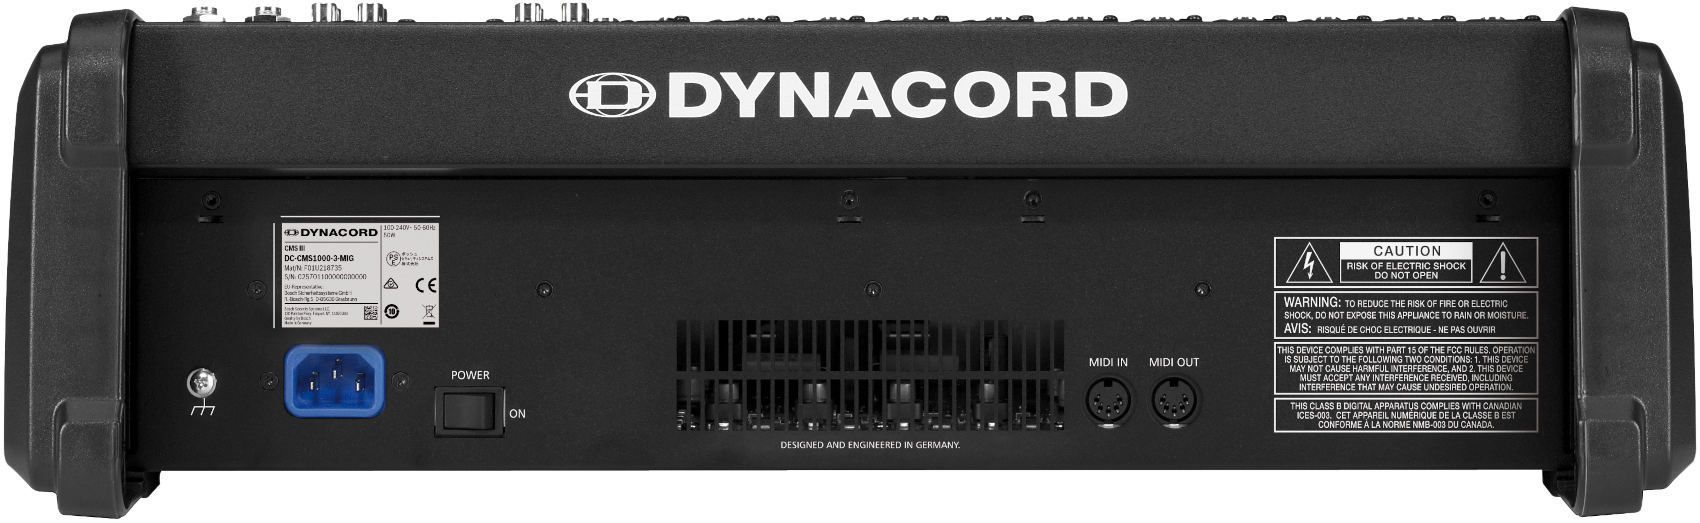 Dynacord CMS 1000-3 - фото 3